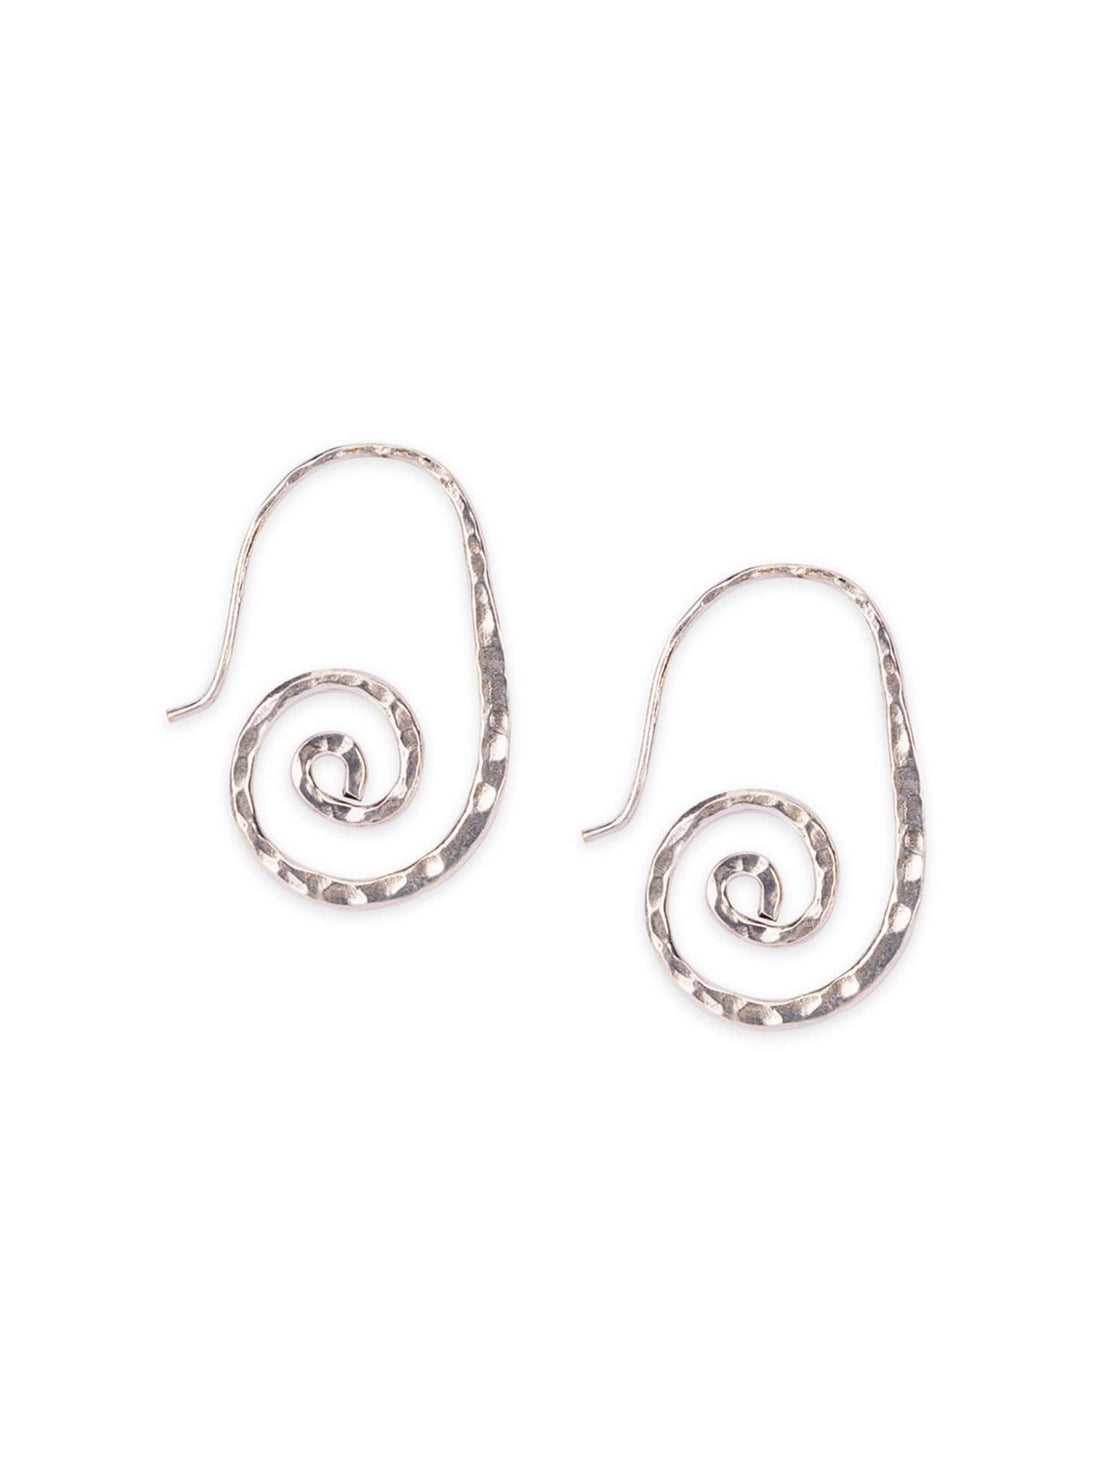 Daily Wear Drops & Danglers Earrings - Elegant Simplicity Silver-Plated Brass Earrings By Studio One Love